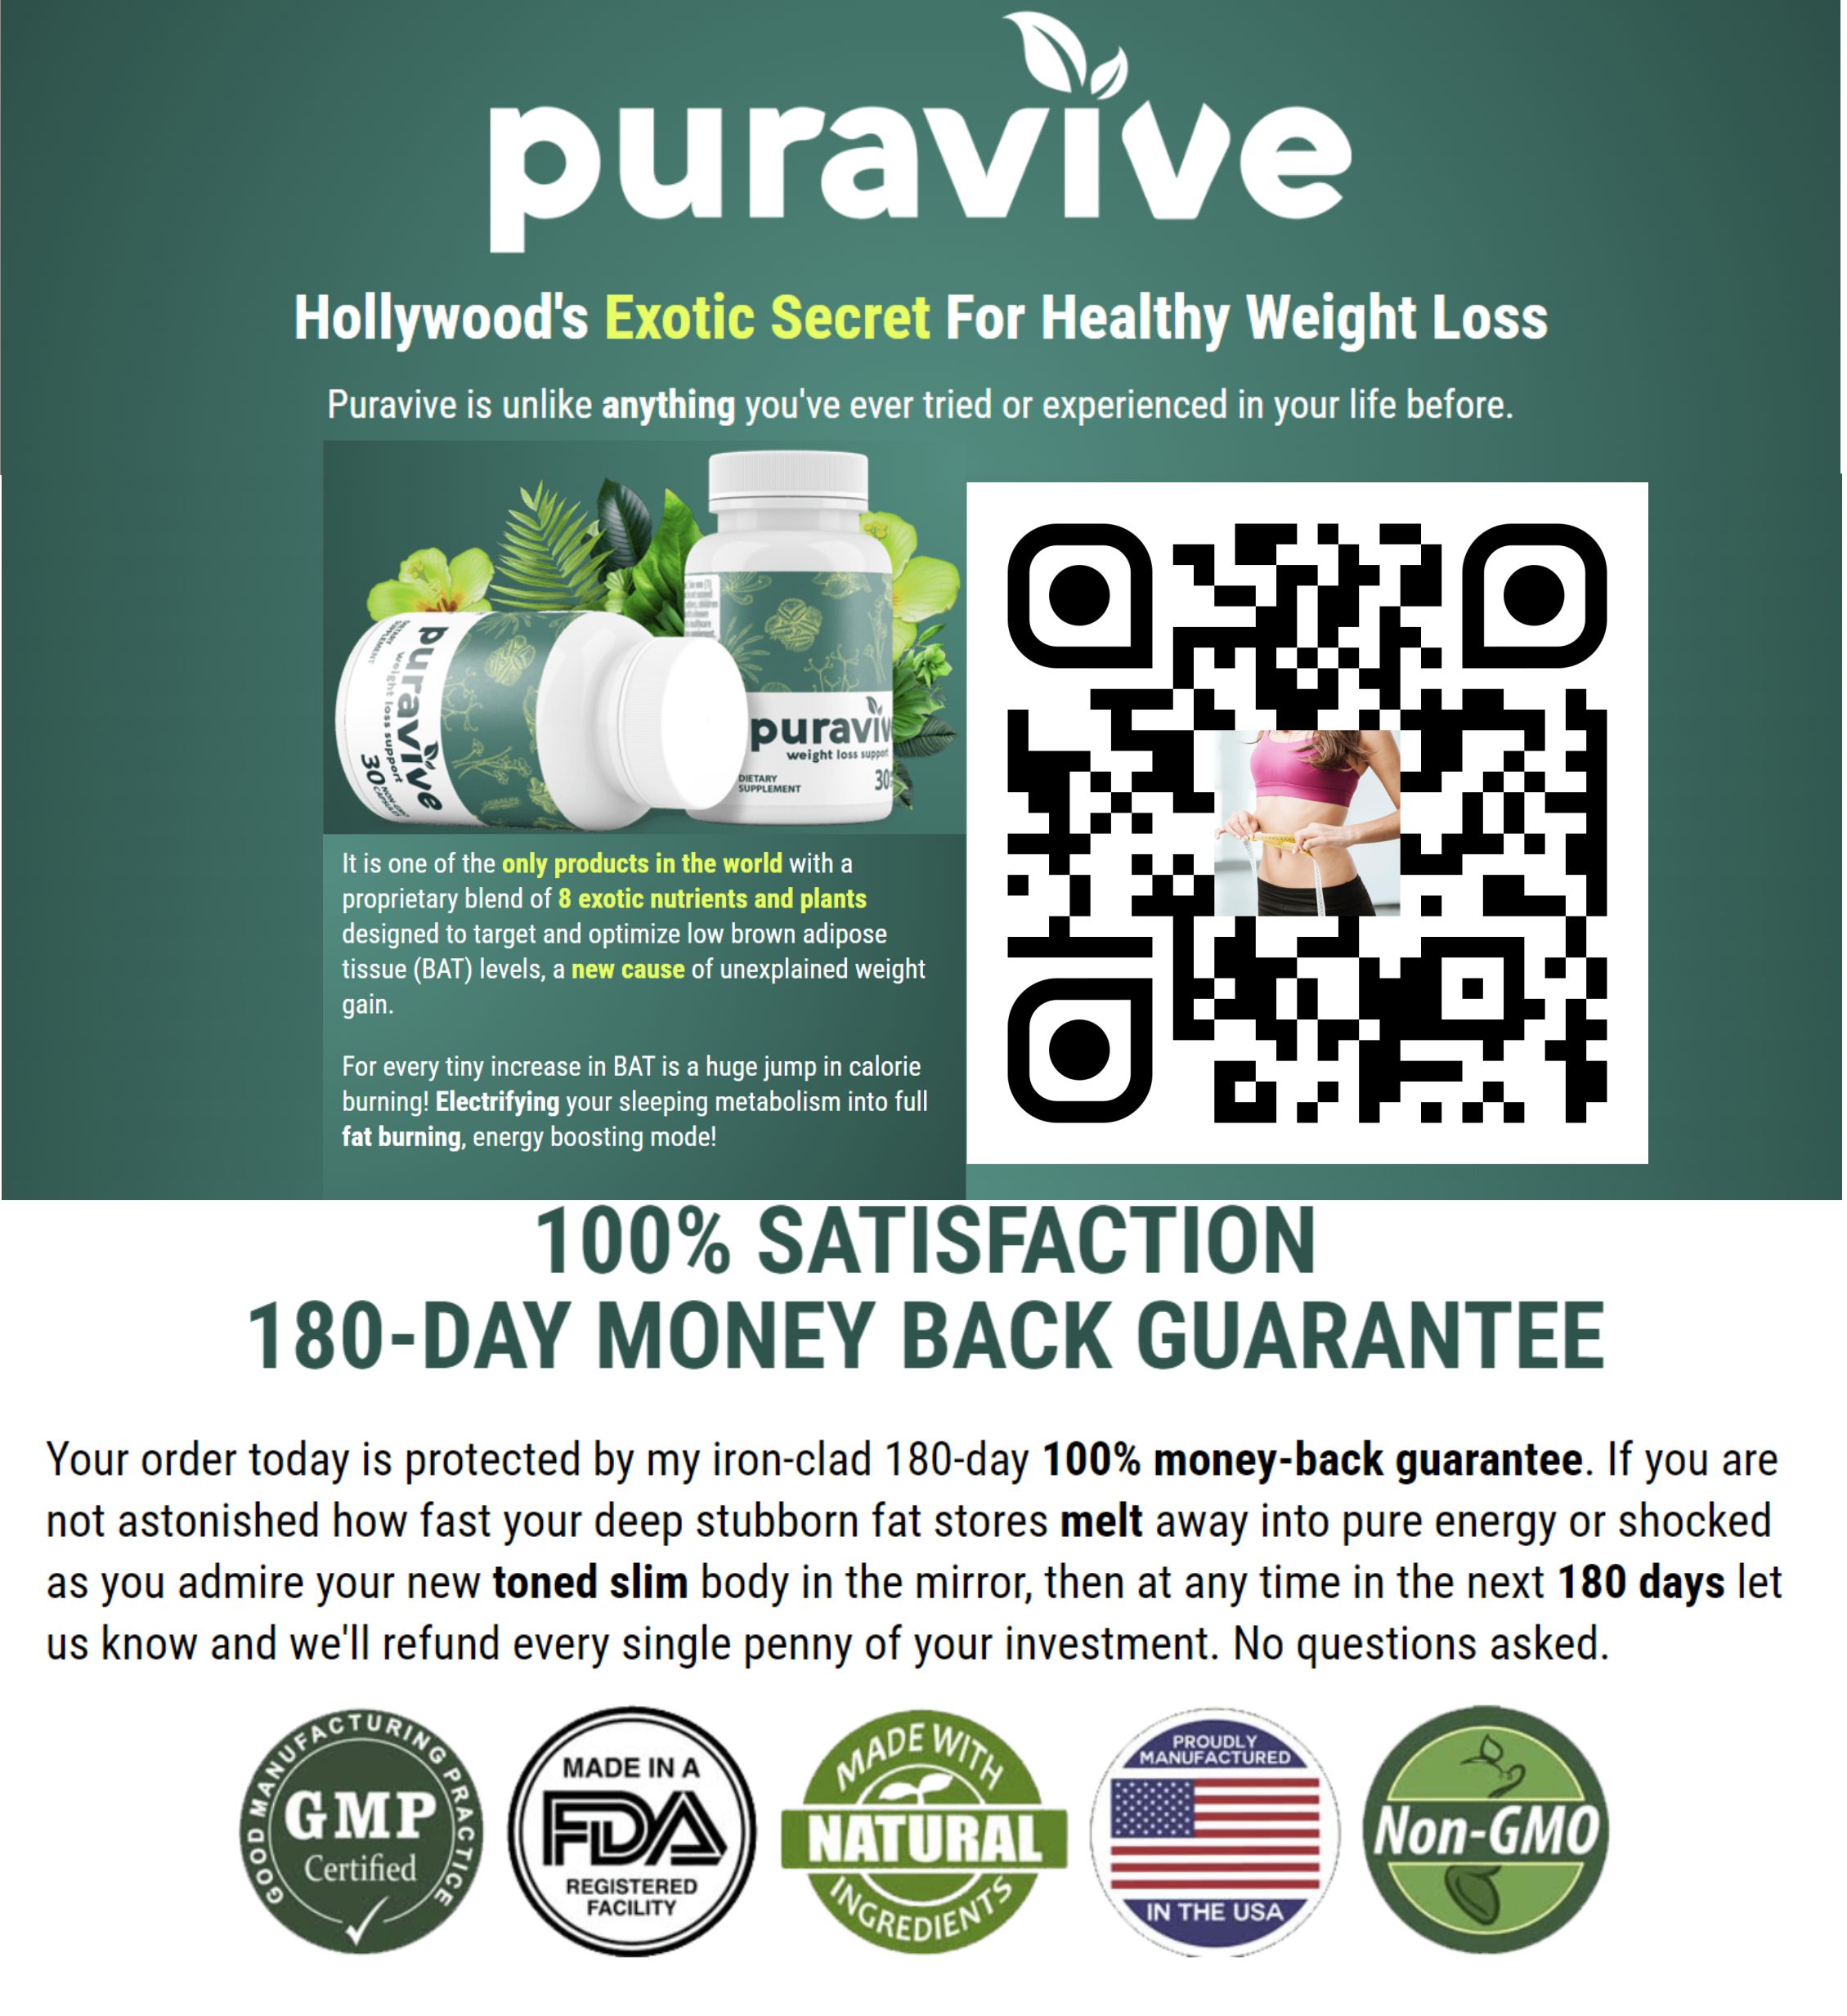 Apoye una pérdida de peso saludable con la mezcla patentada de PuraVive de 8 potentes nutrientes y plantas tropicales respaldados por investigaciones clínicas